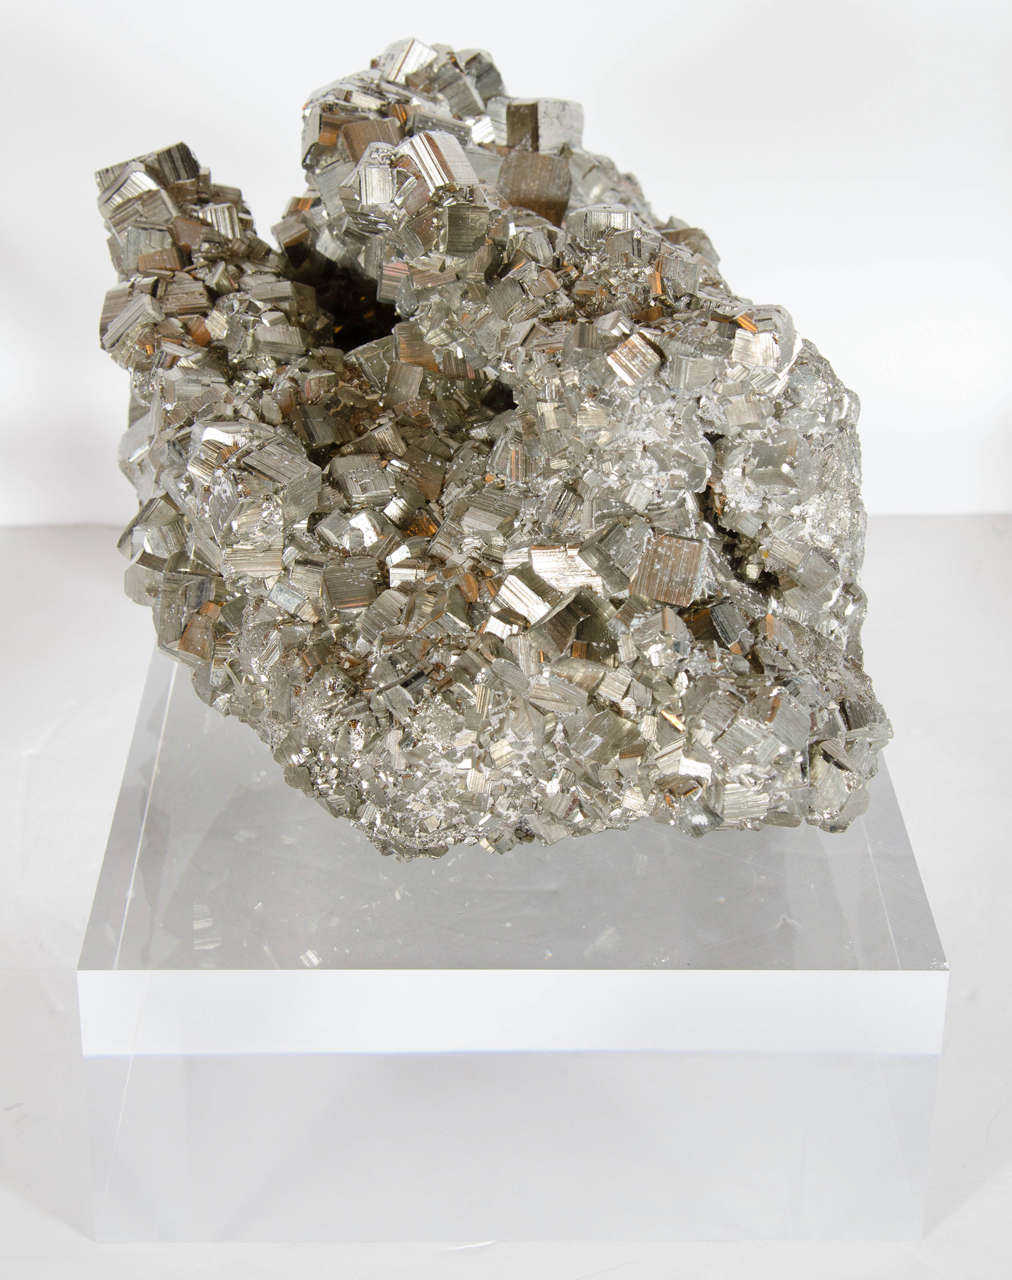 Brazilian Impressive Pyrite Mineral Specimen on a Thick Lucite Base